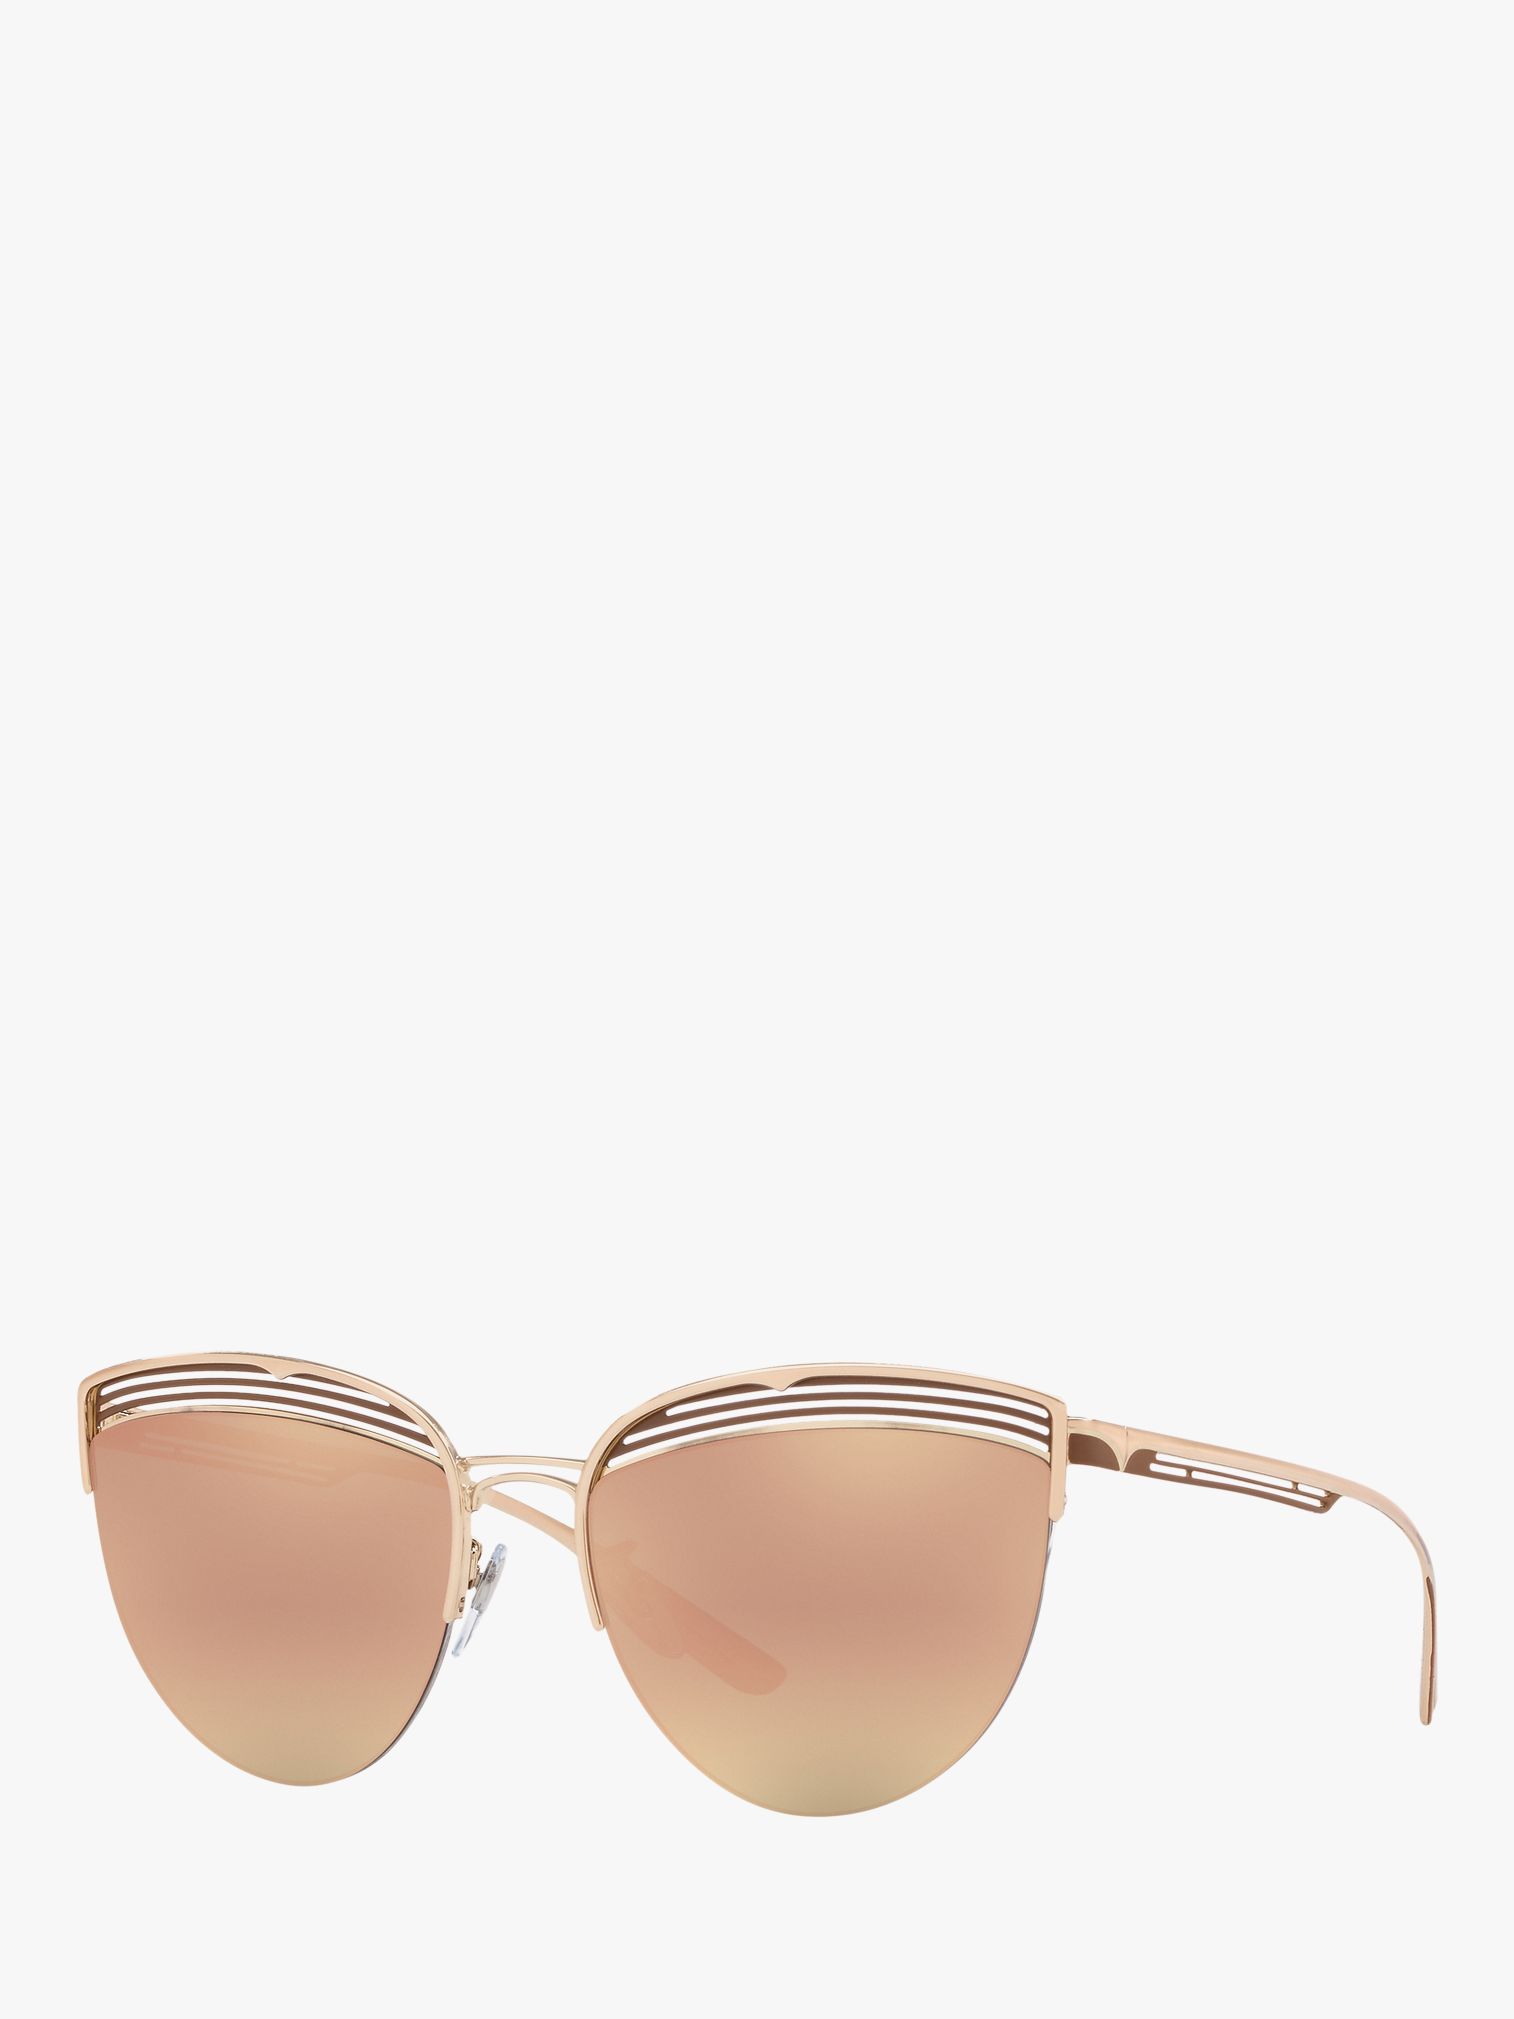 bvlgari pink gold sunglasses